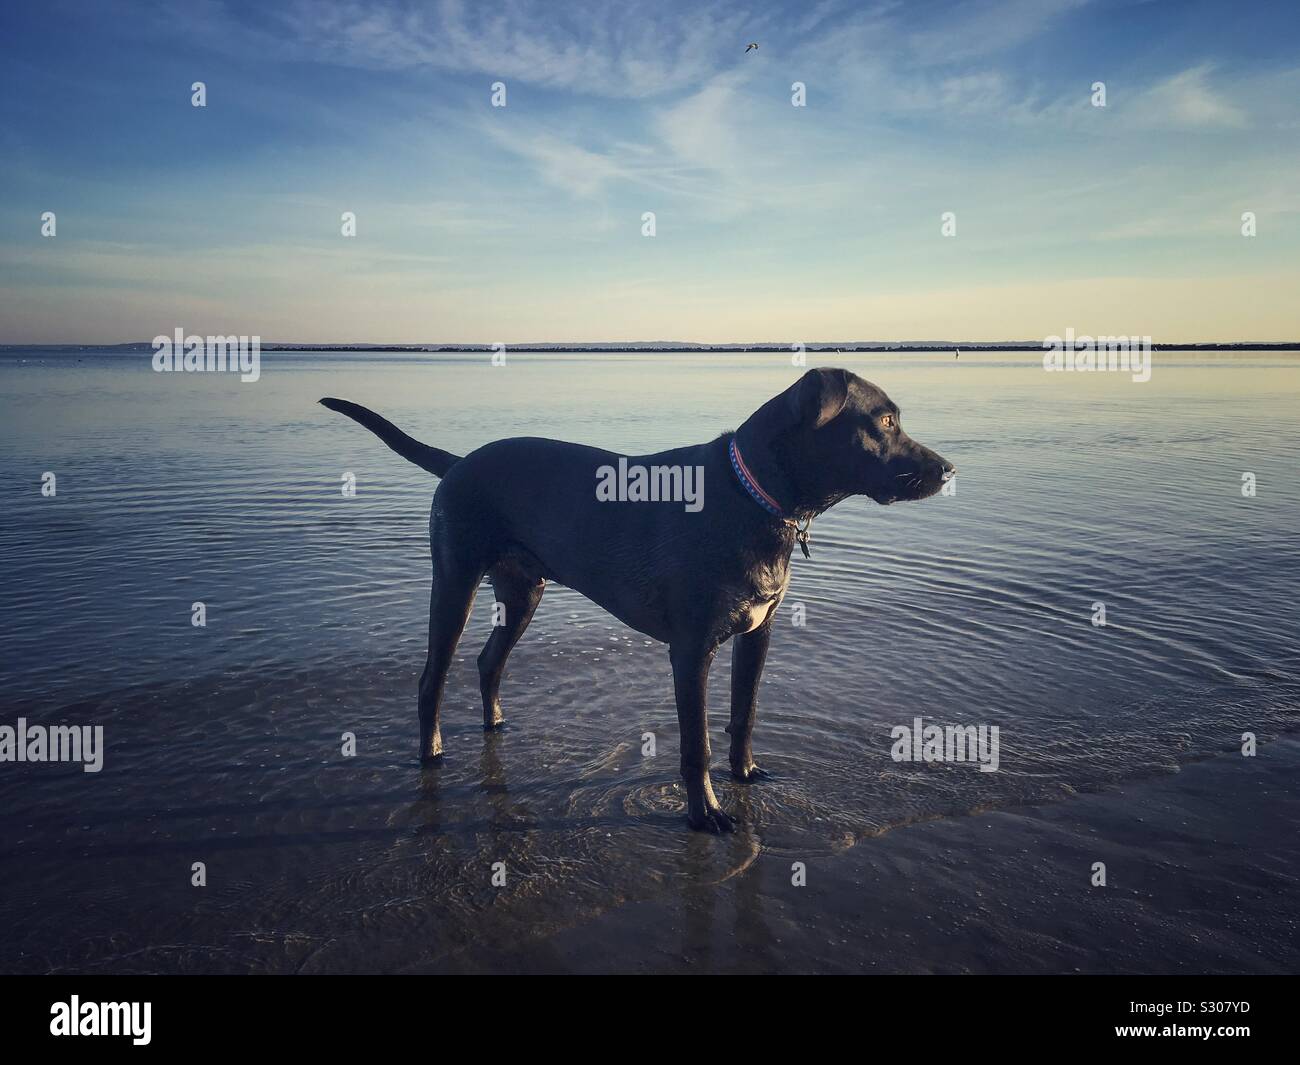 Dog at Beach at Dusk Stock Photo